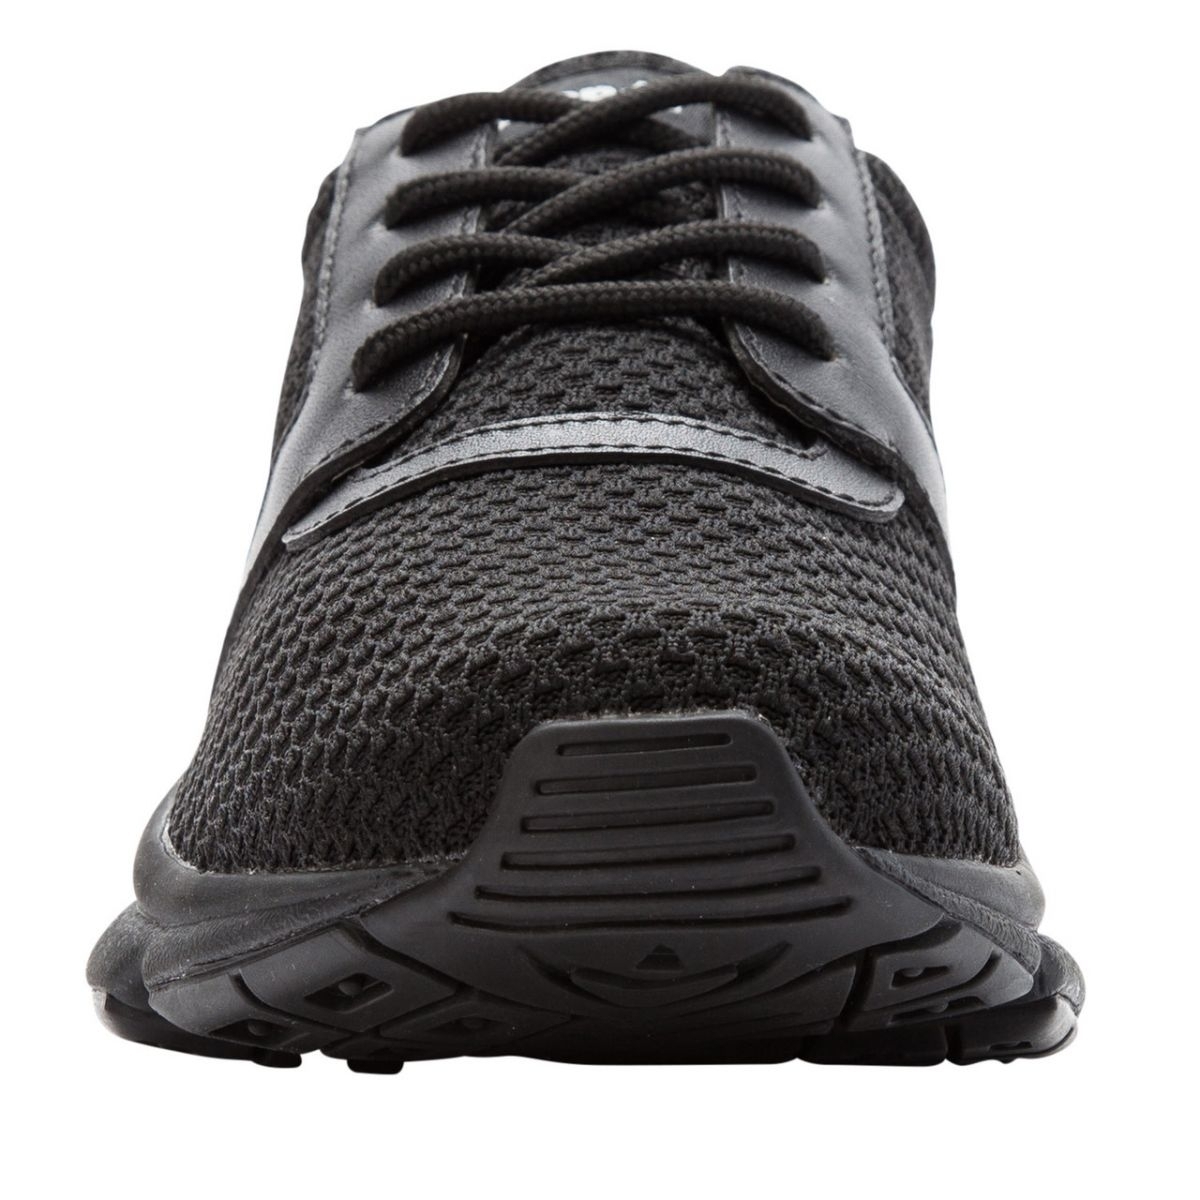 Propet Women's Stability X Walking Shoe Black - WAA032MBLK BLACK - BLACK, 9.5 Wide